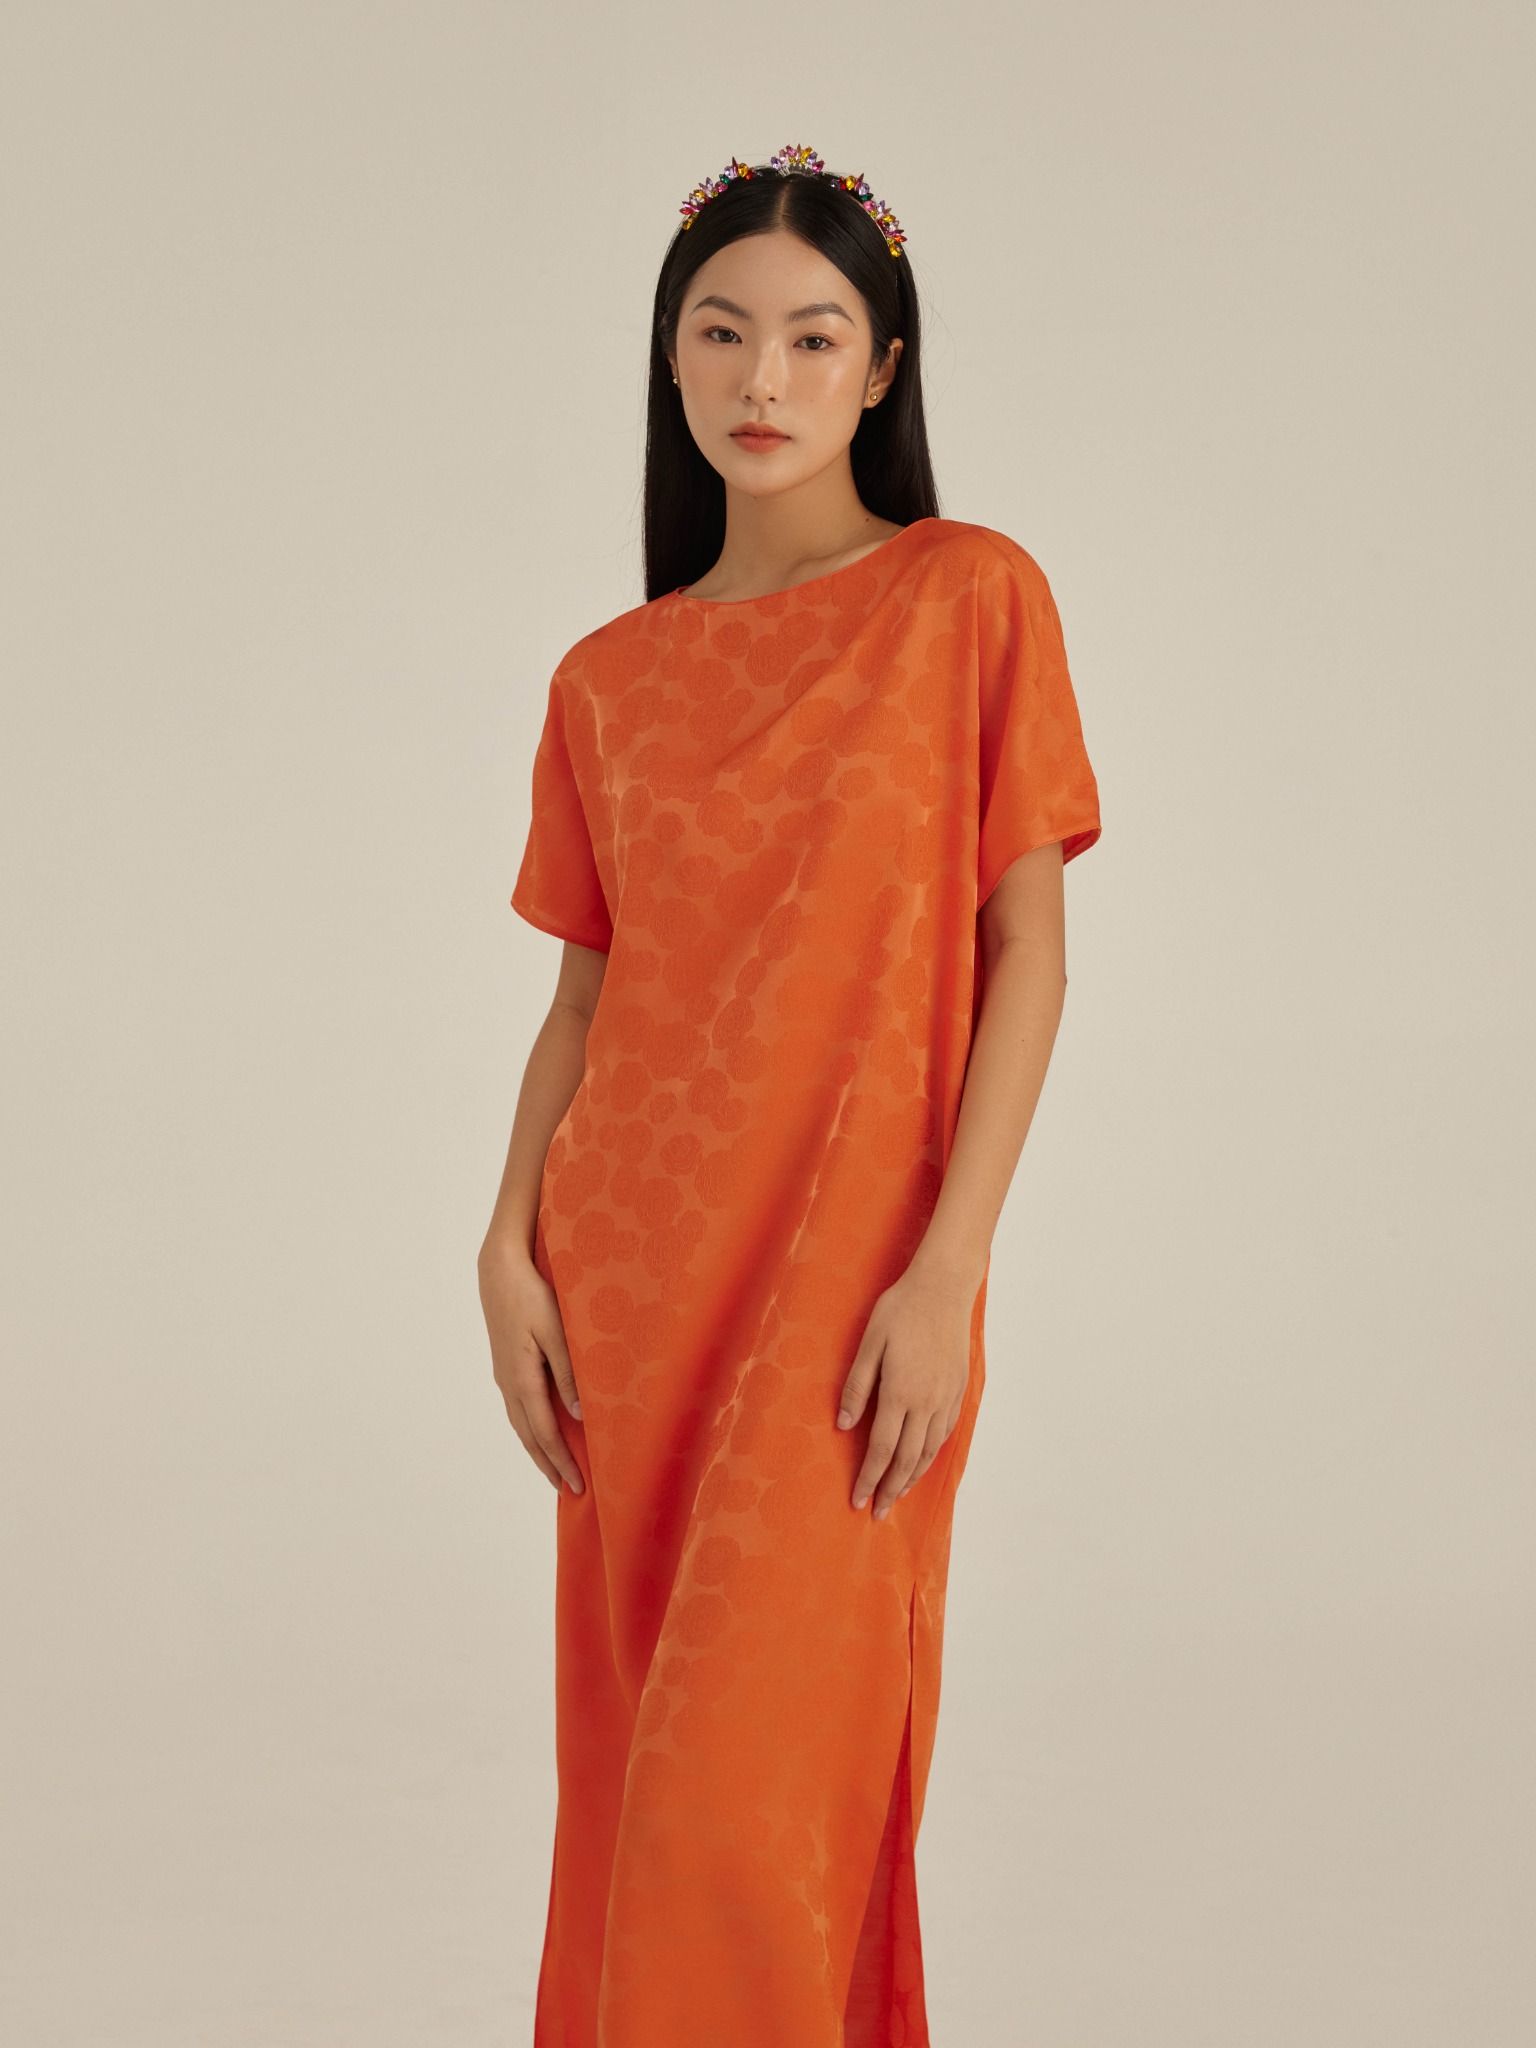 rajasthani tái chế ấn độ sari váy dài bán buôn rất nhiều| Alibaba.com